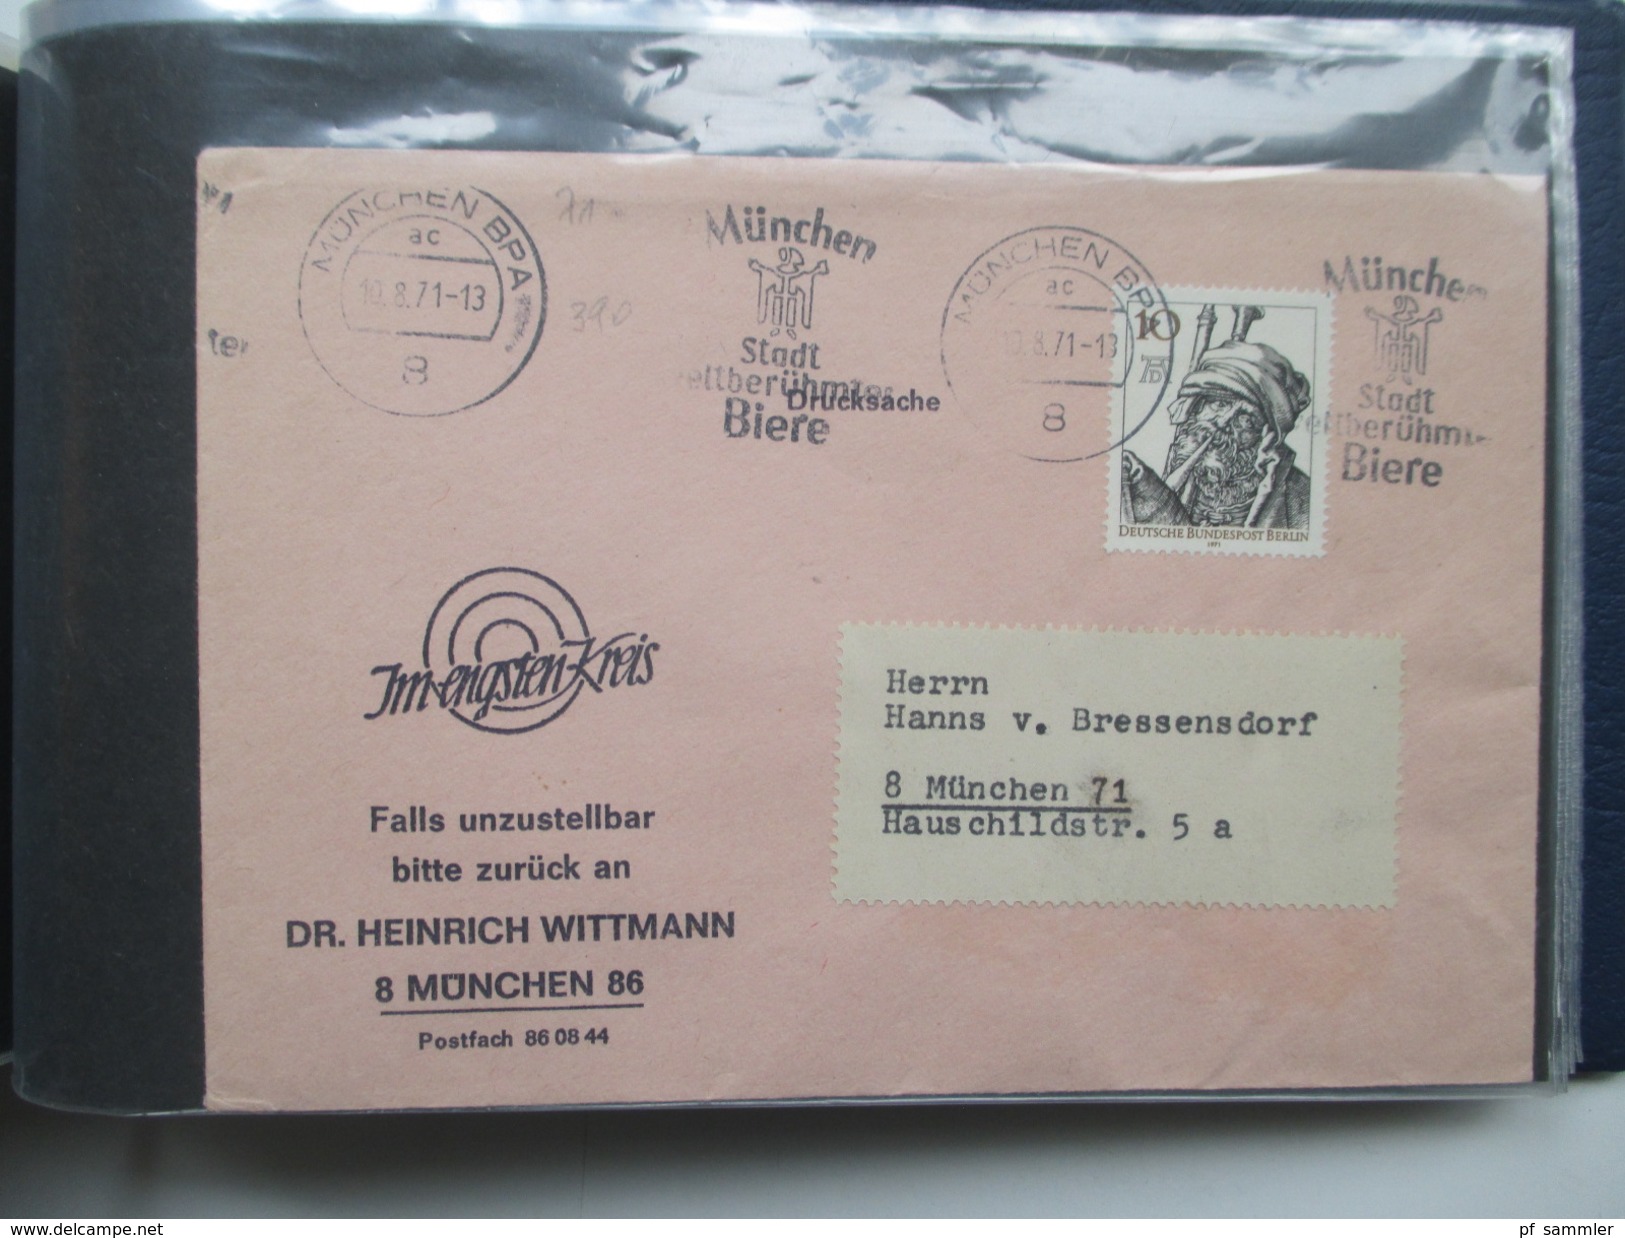 Berlin Belegesammlung 100 Briefe. Bedarf / FDC 1953 - 1972. Interessante Stücke / Stöberposten! Hoher Katalogwert!!